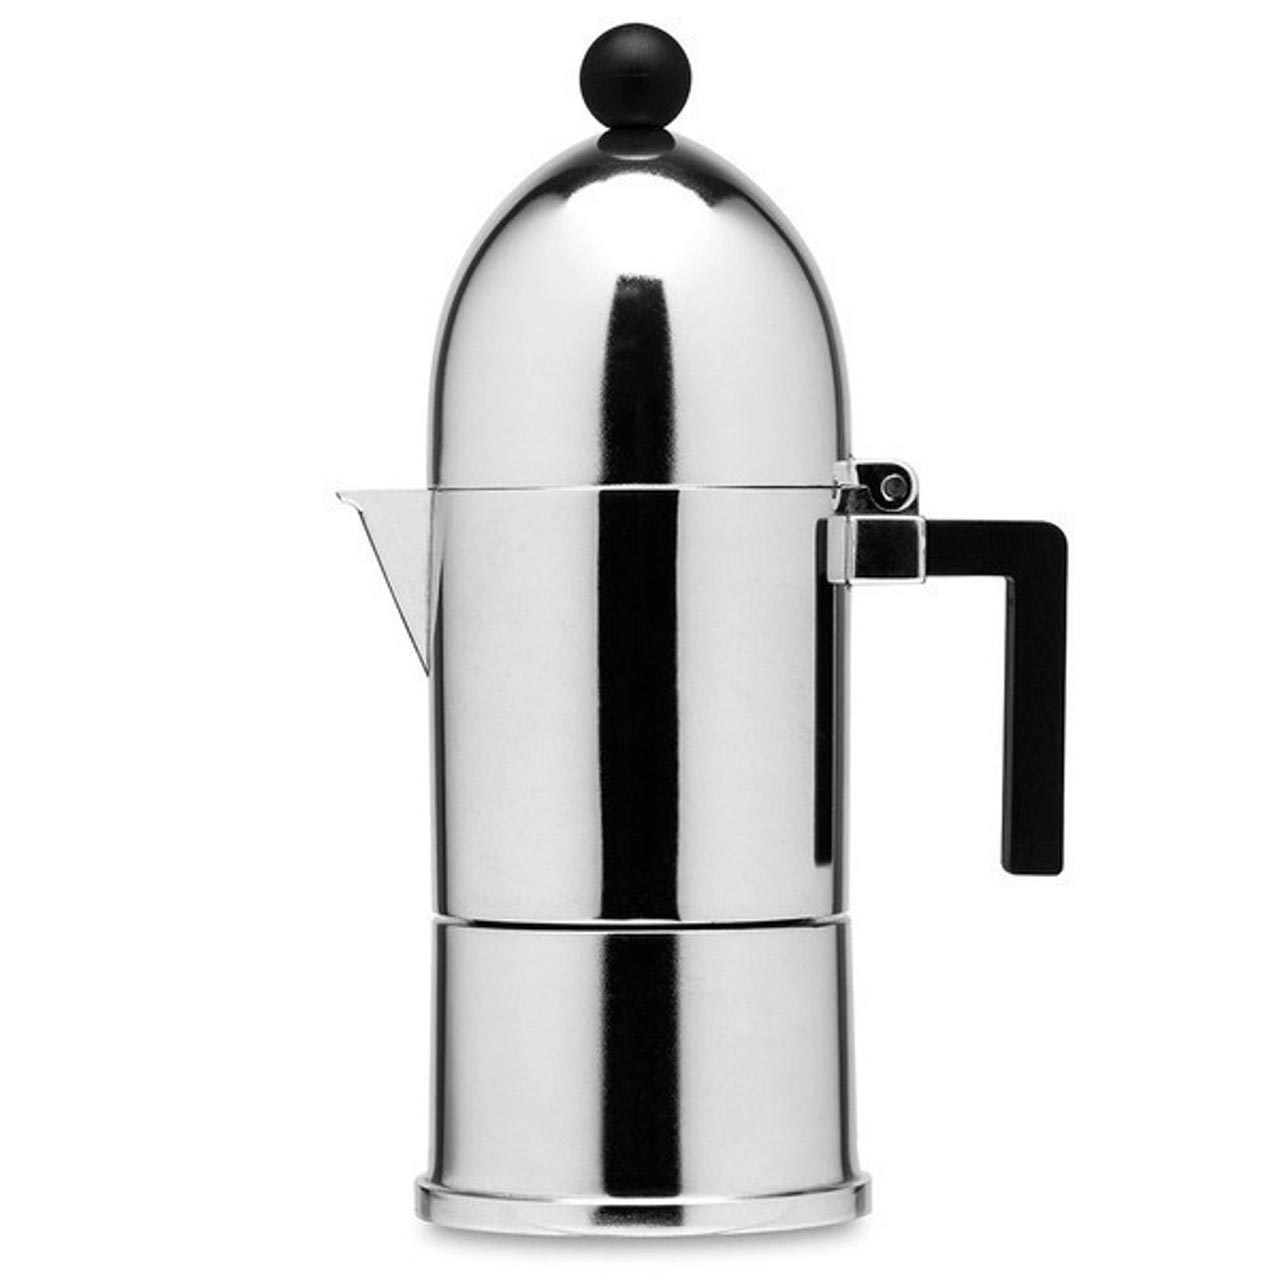 https://cdn11.bigcommerce.com/s-2plzc/images/stencil/original/products/2286/34059/alessi-la-cupola-espresso-coffee-maker-6cup-1-op__00194.1653995531.jpg?c=2